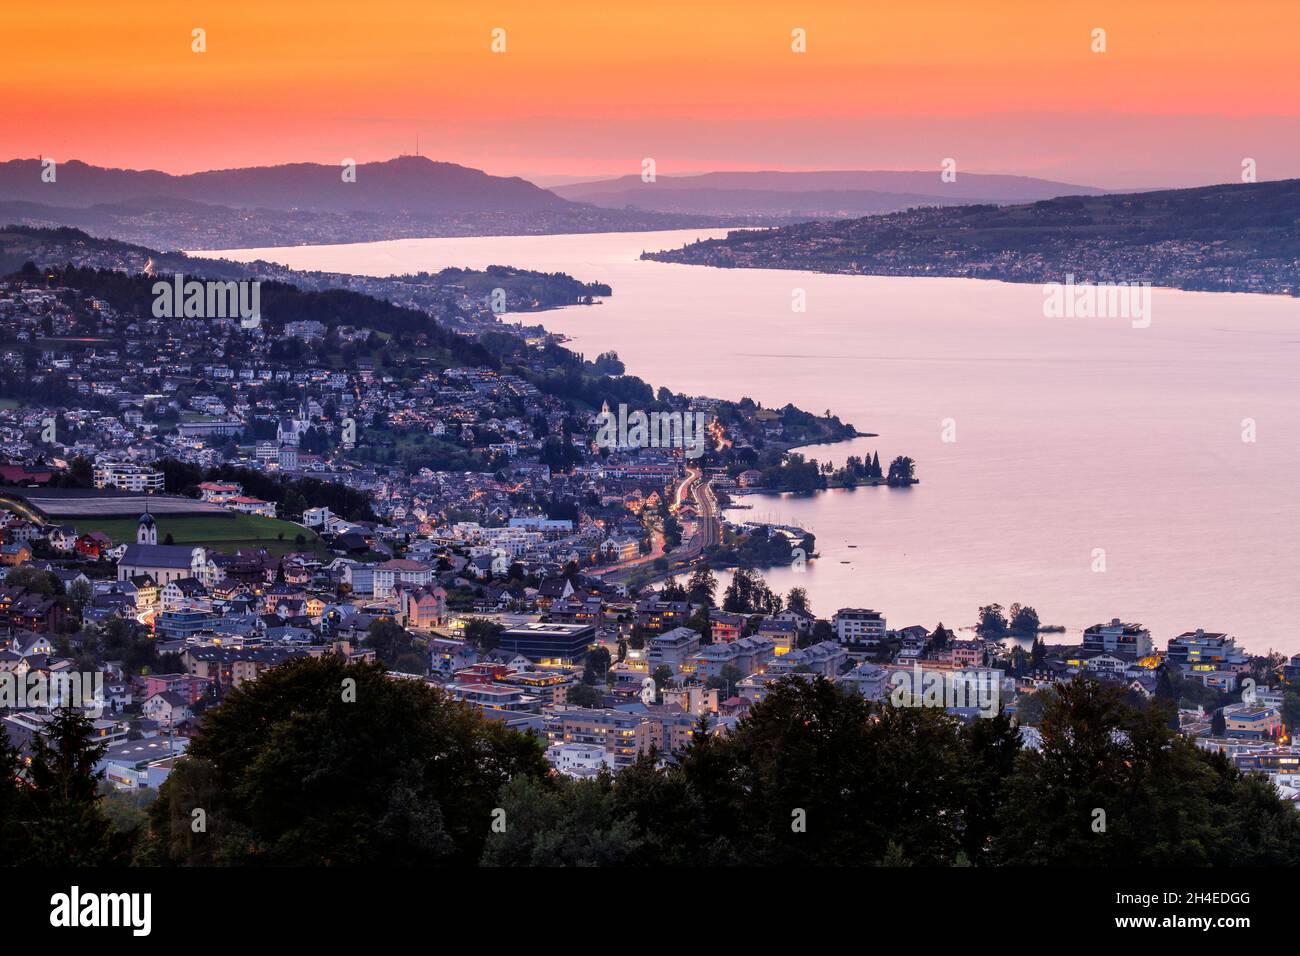 Blick bei Abenddämmerung von Feusisberg über den Zürichsee nach Zürich, mit den beleuchteten Ortschaften Wollerau, Richterswil, Wädenswil und Meilen u Stock Photo